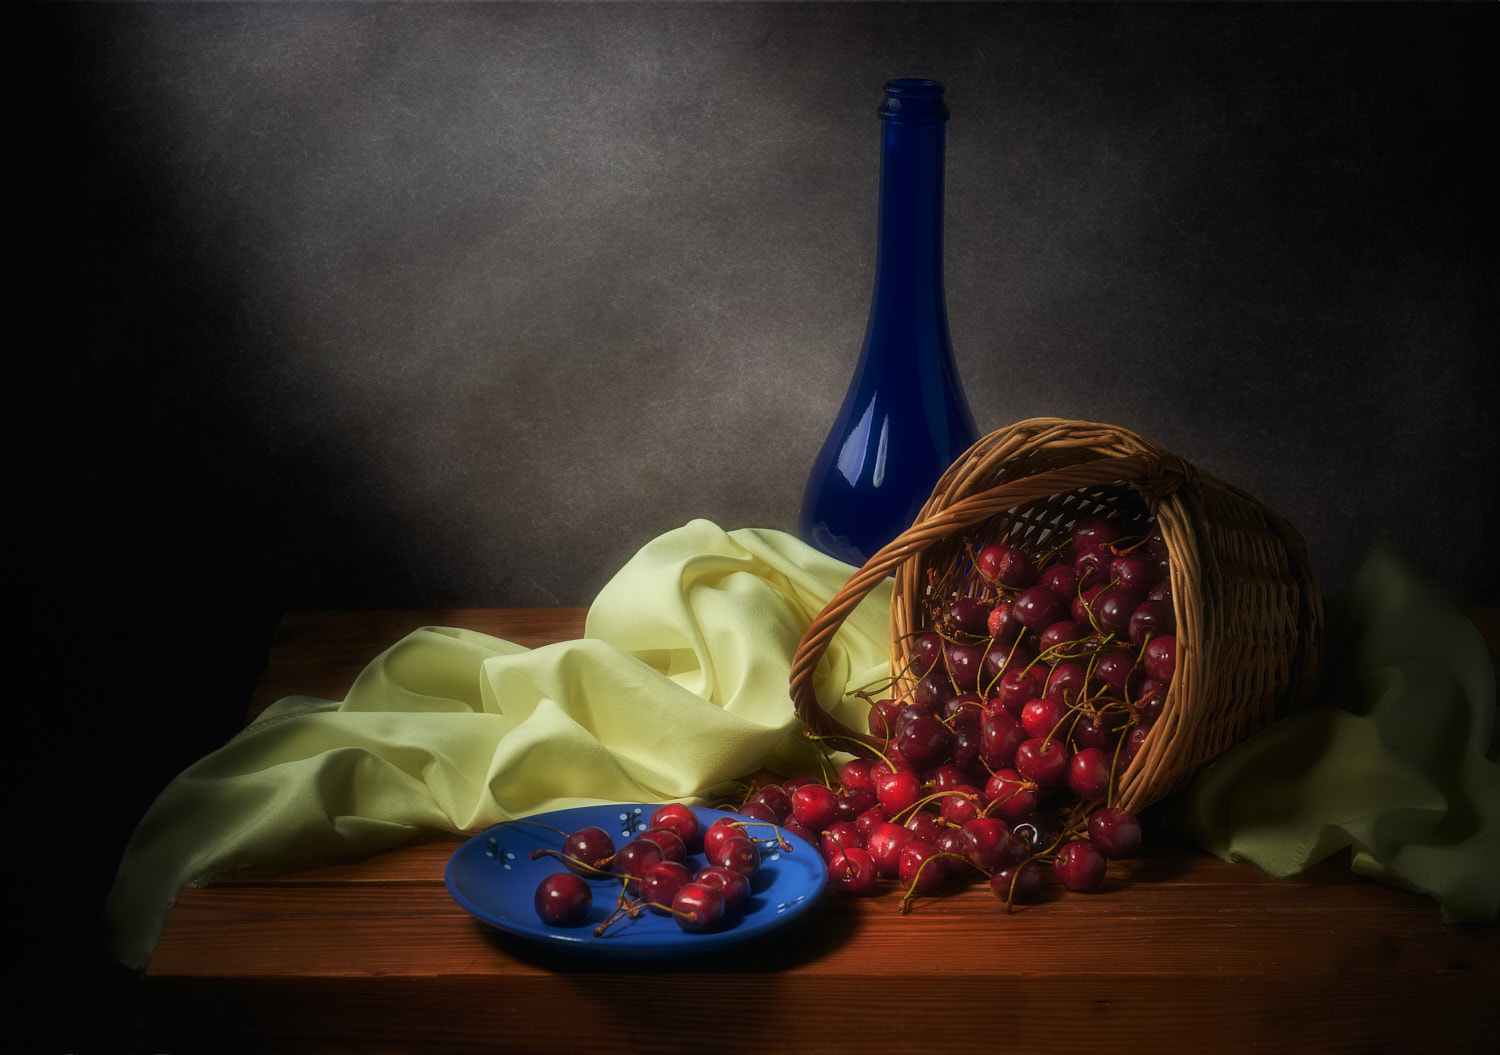 Черешня на синем блюдце натюрморт композиция постановка сцена посуда предметы черешня ягоды плоды блюдце корзинка